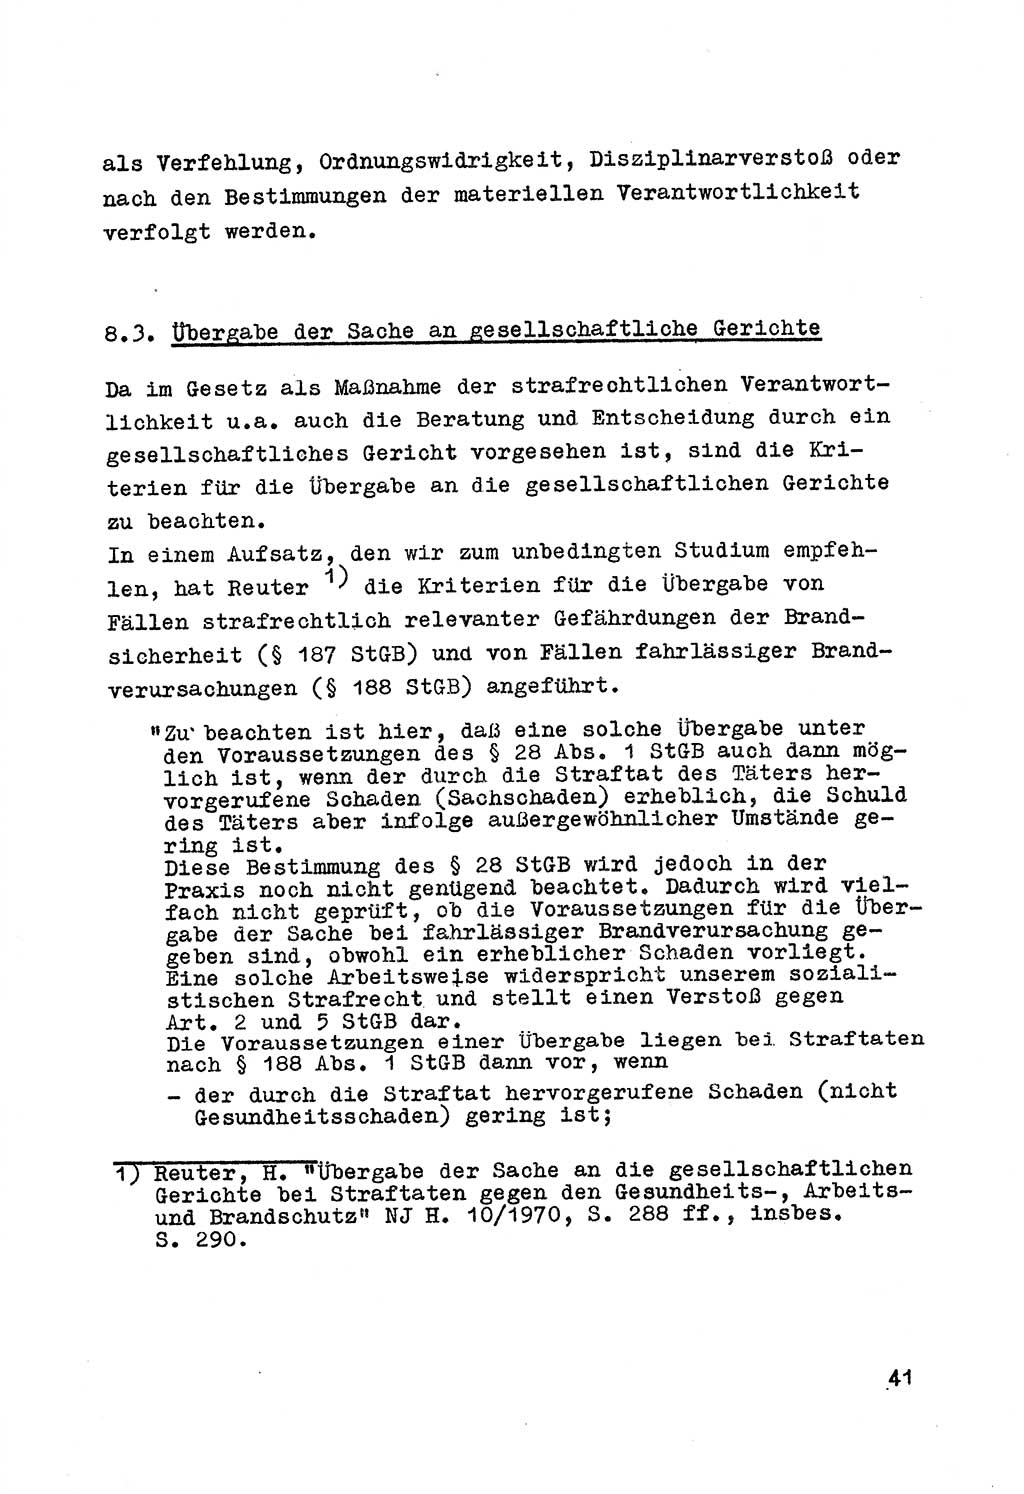 Strafrecht der DDR (Deutsche Demokratische Republik), Besonderer Teil, Lehrmaterial, Heft 7 1970, Seite 41 (Strafr. DDR BT Lehrmat. H. 7 1970, S. 41)